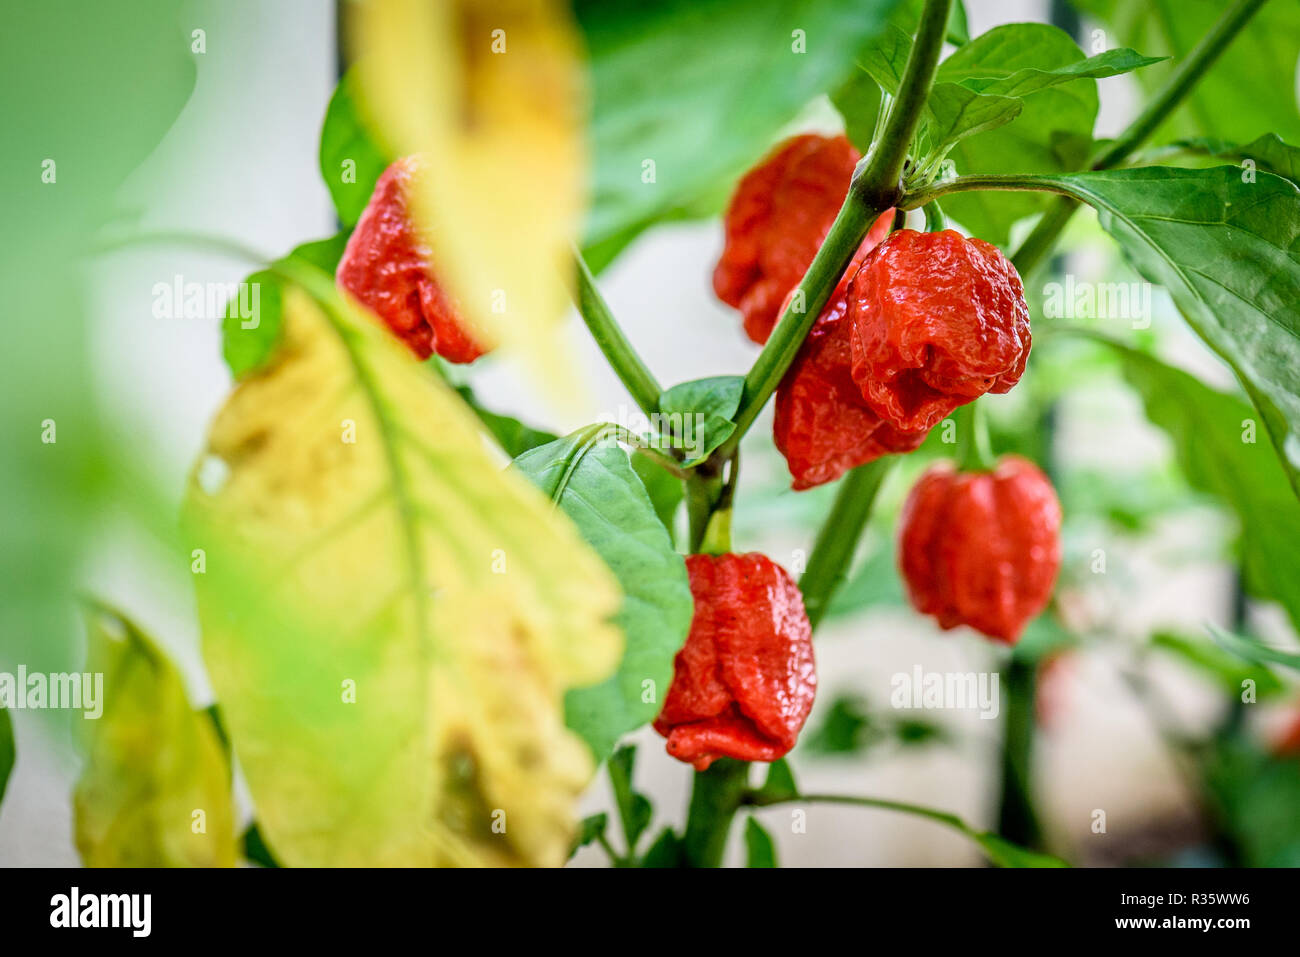 Red hot chili pepper Trinidad scorpion sur une plante. Poivron Capsicum chinense sur une plante verte avec des feuilles dans le jardin d'accueil ou une ferme. Banque D'Images